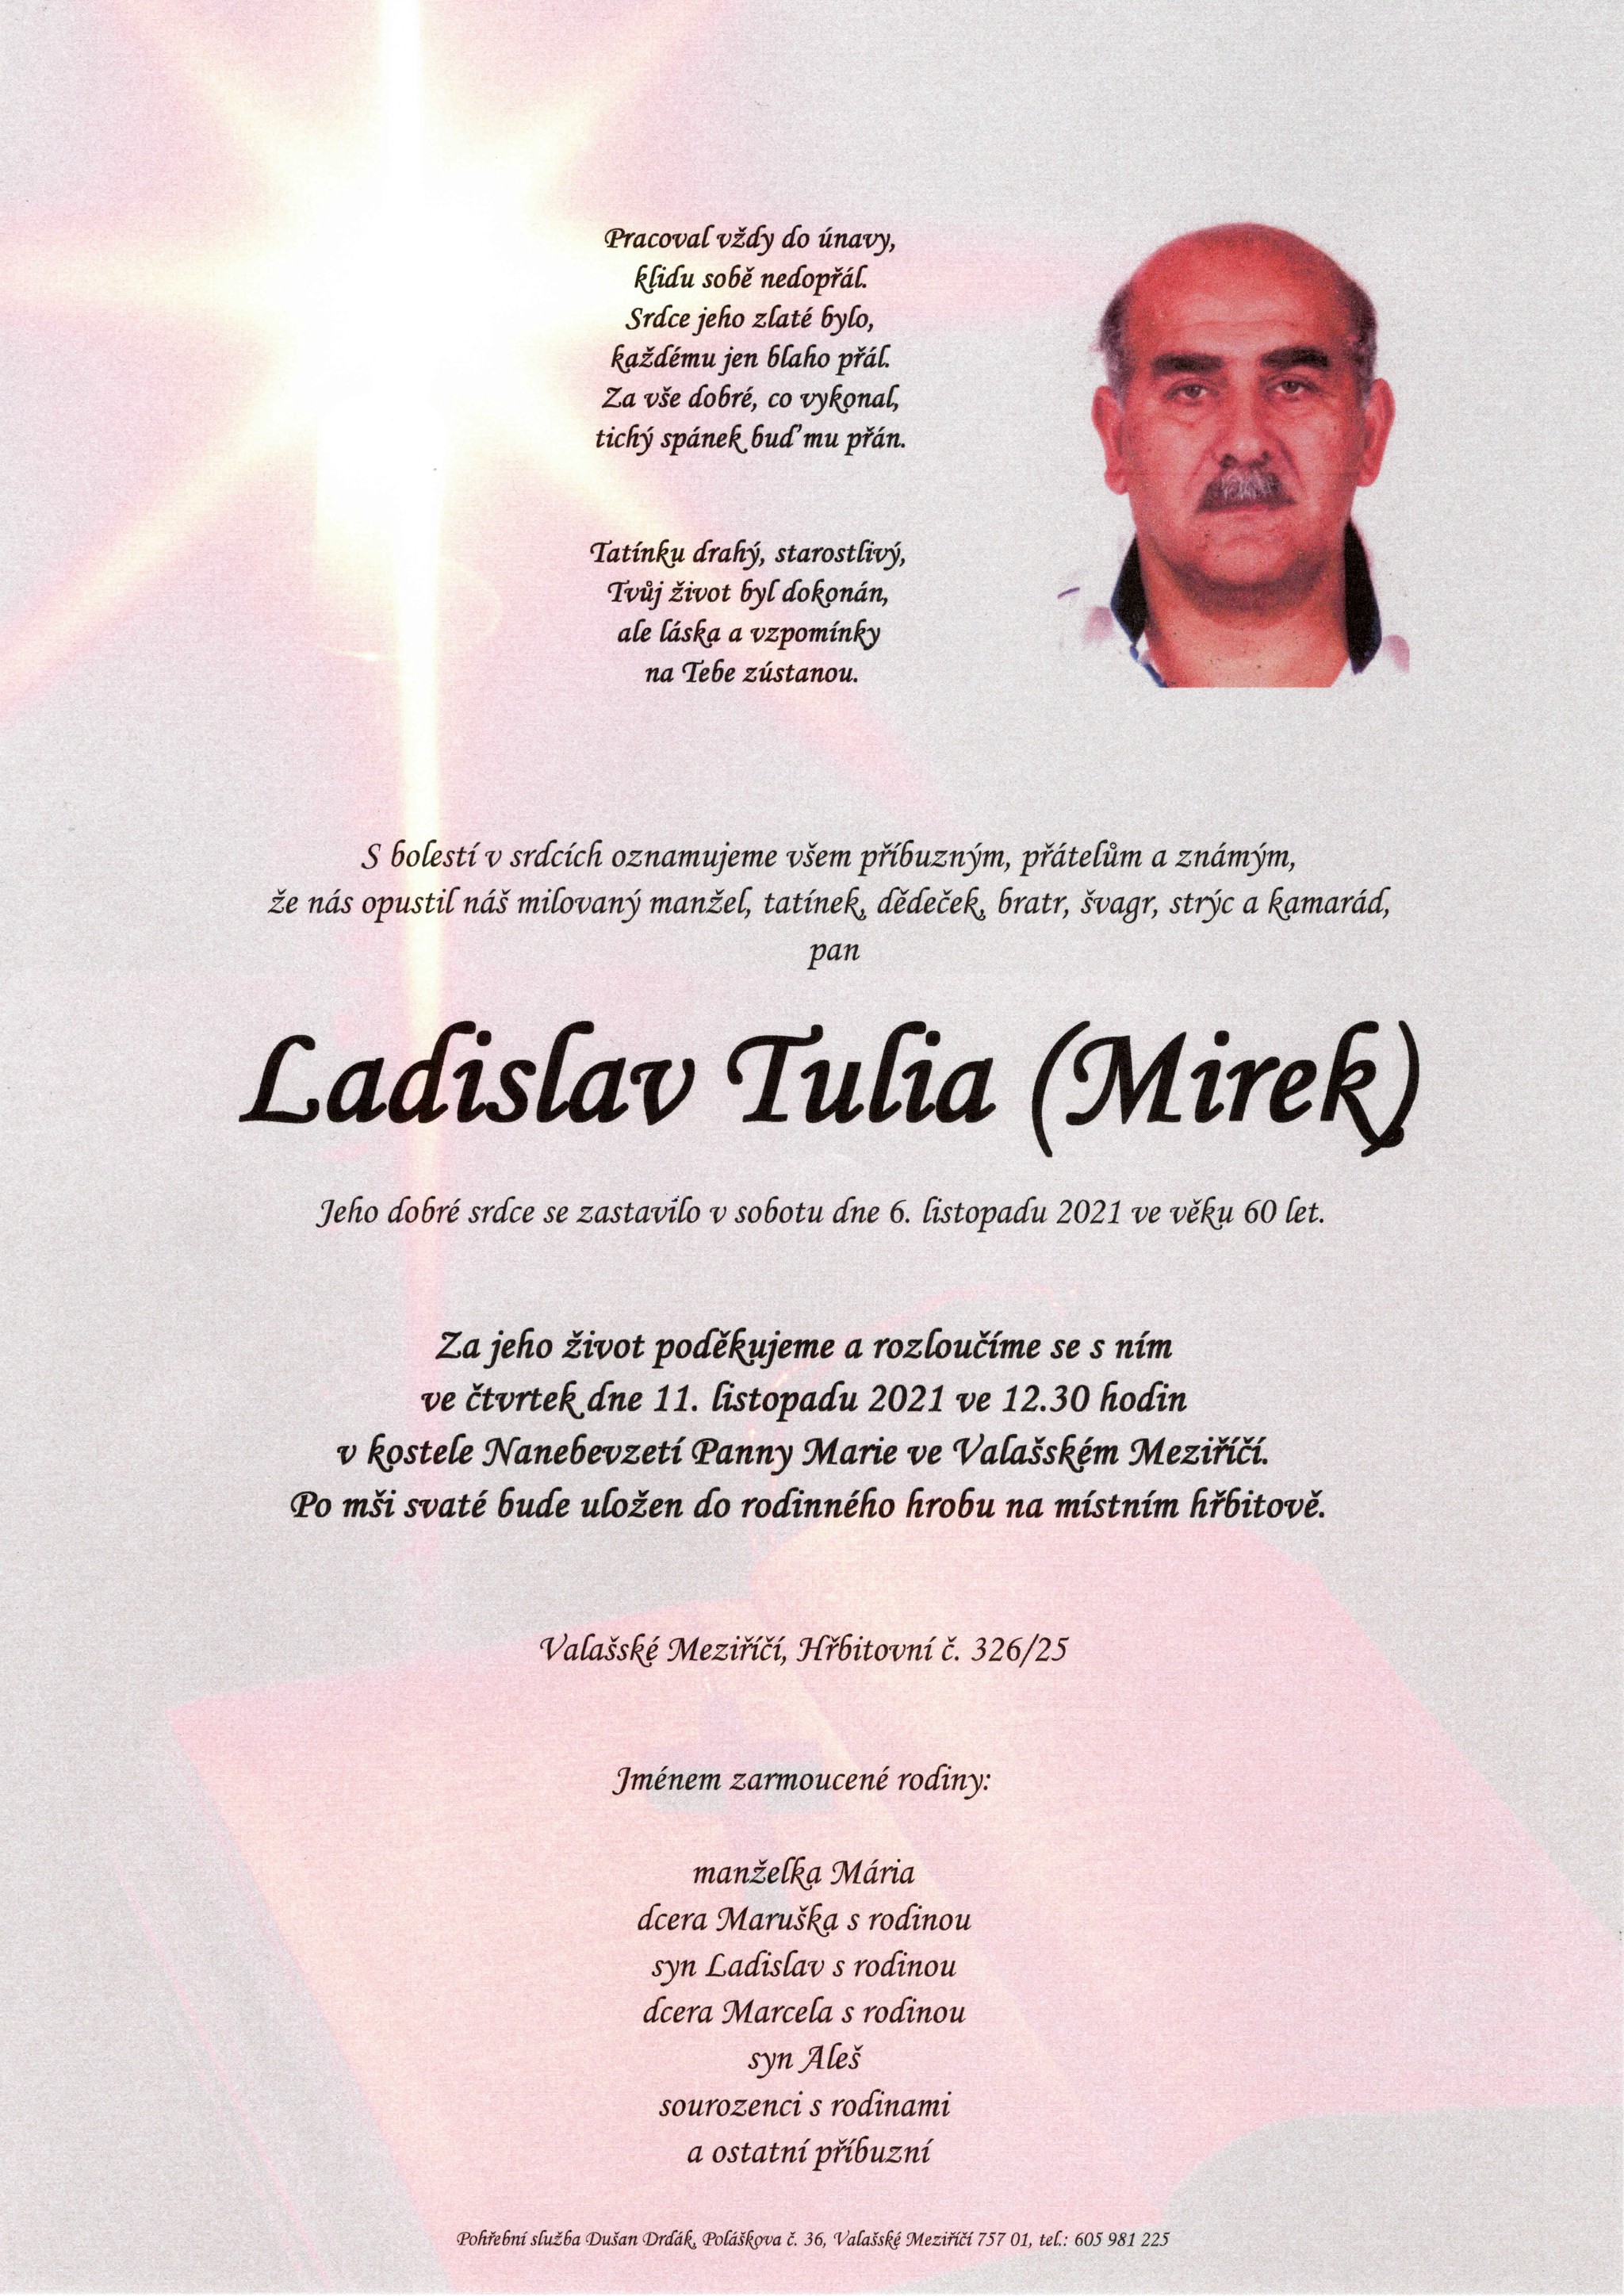 Ladislav Tulia (Mirek)